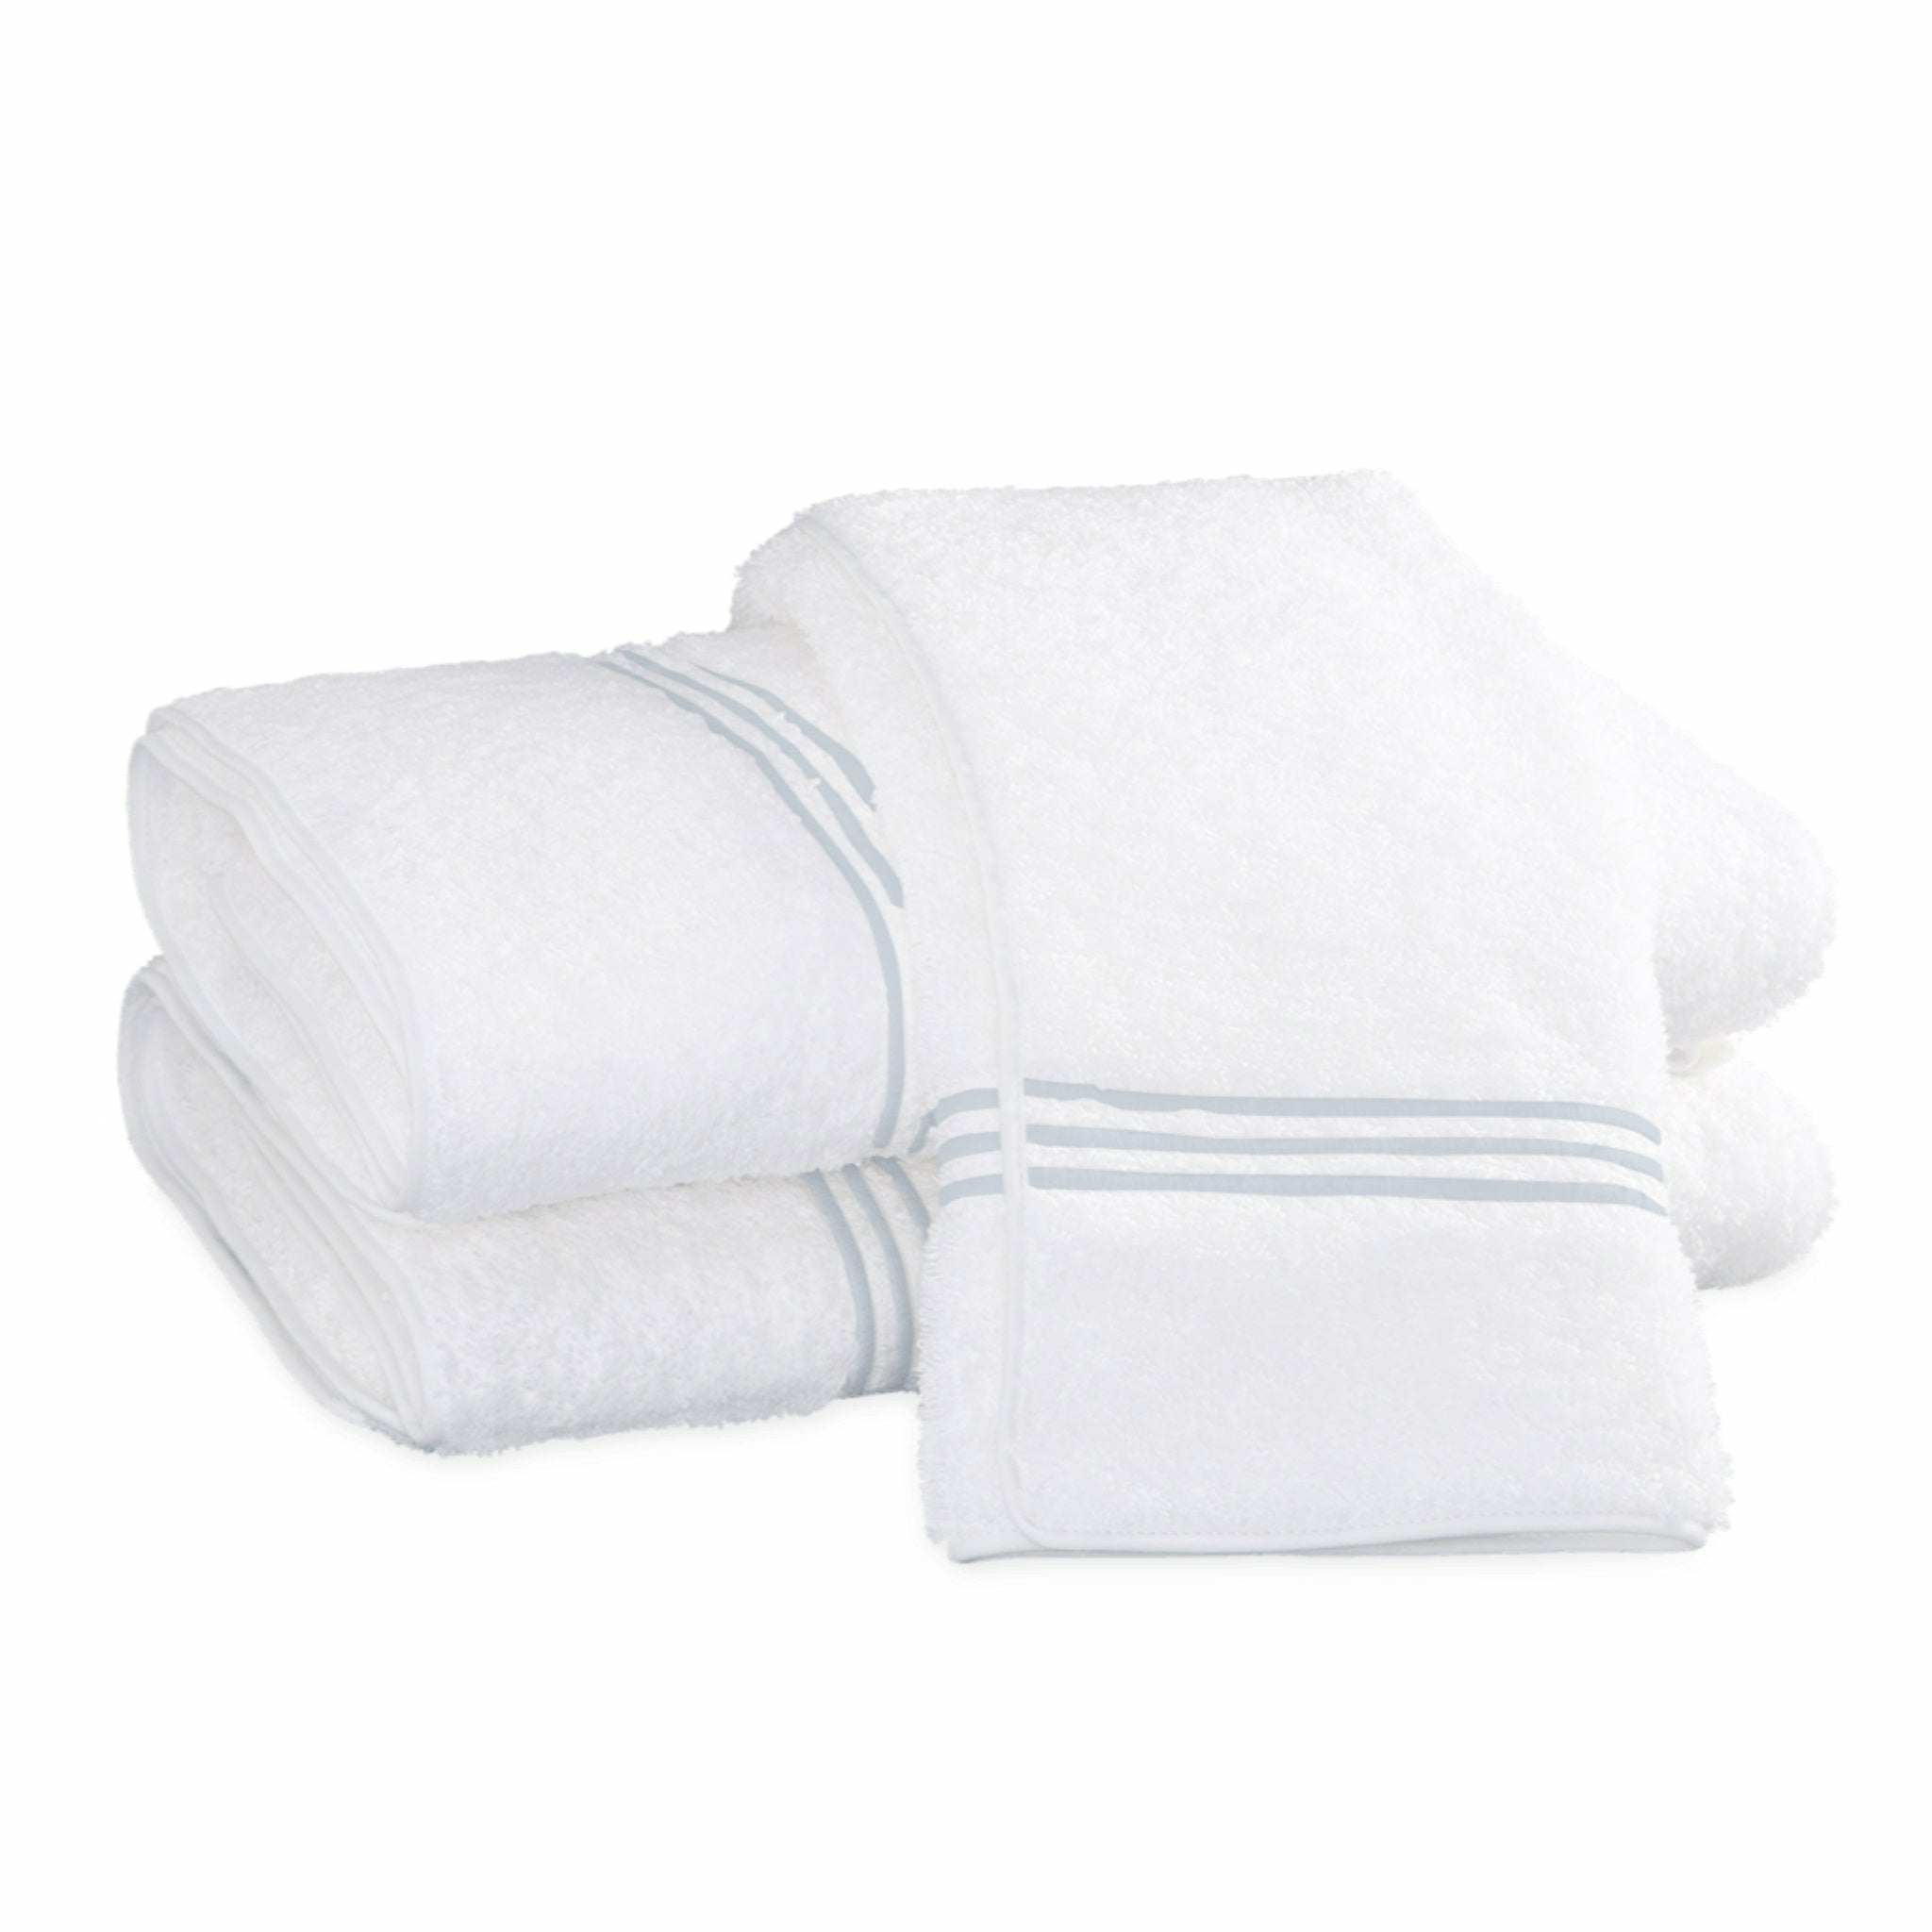 https://flandb.com/cdn/shop/products/Matouk-Bel-Tempo-Bath-Towels-Blue.jpg?v=1660866832